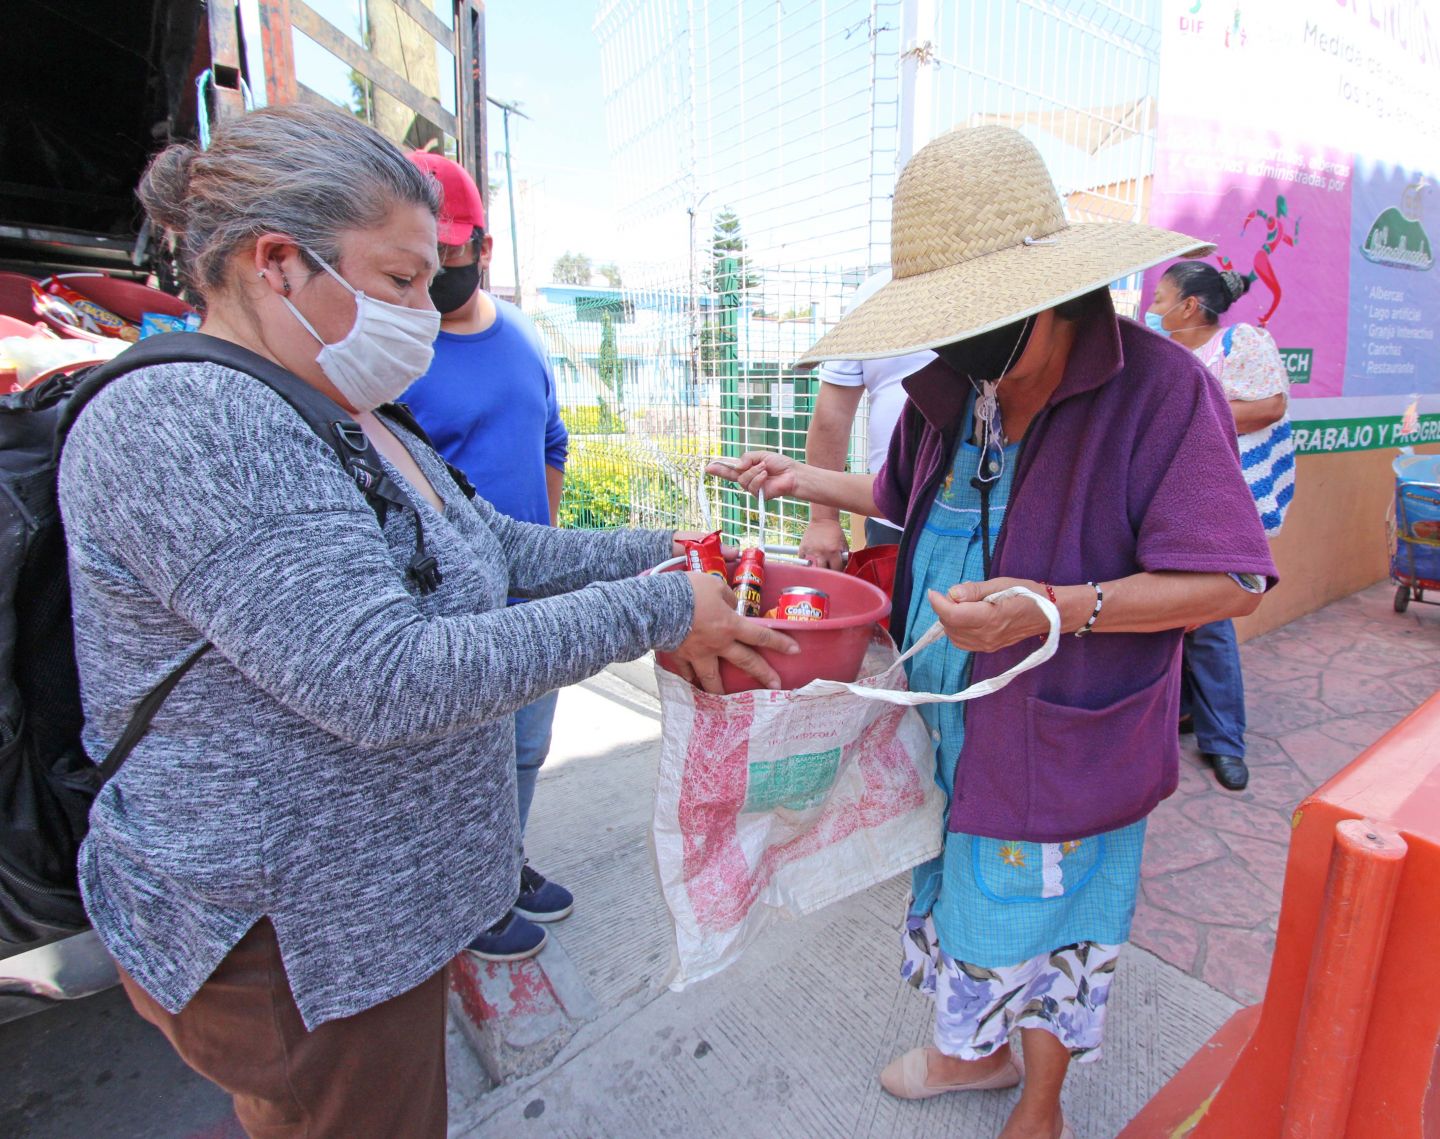 
#En Chimalhuacán el gobierno  otorga alimentos a bajo costo a grupos vulnerables